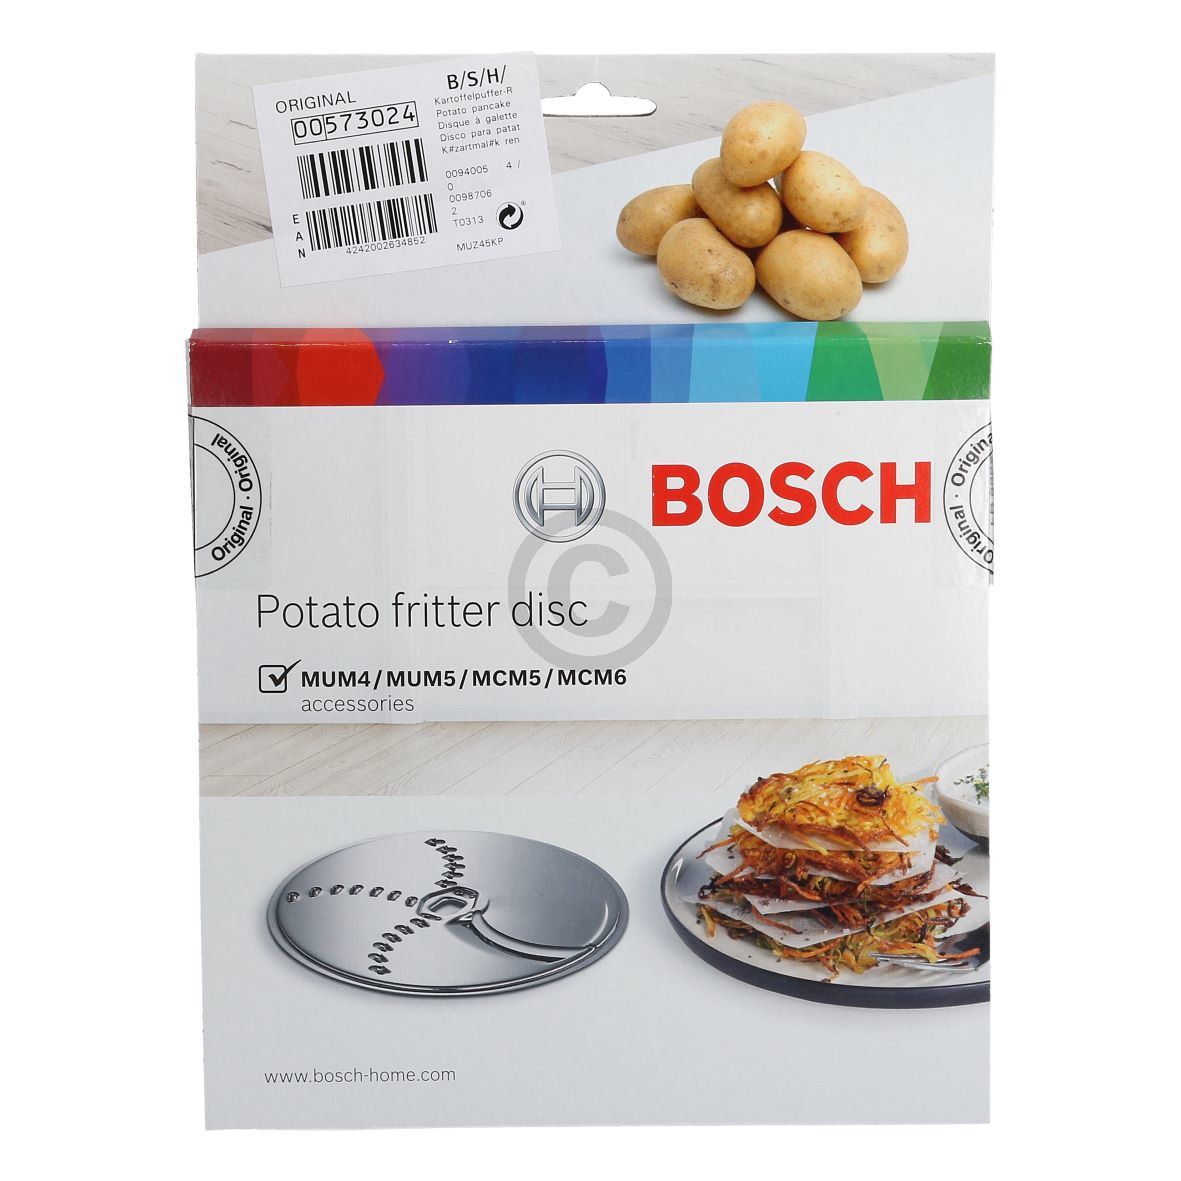 Raspelscheibe für Kartoffelpuffer Rösti BOSCH 00573024 MUZ45KP1 in Durchlaufschnitzler Küchenmaschine